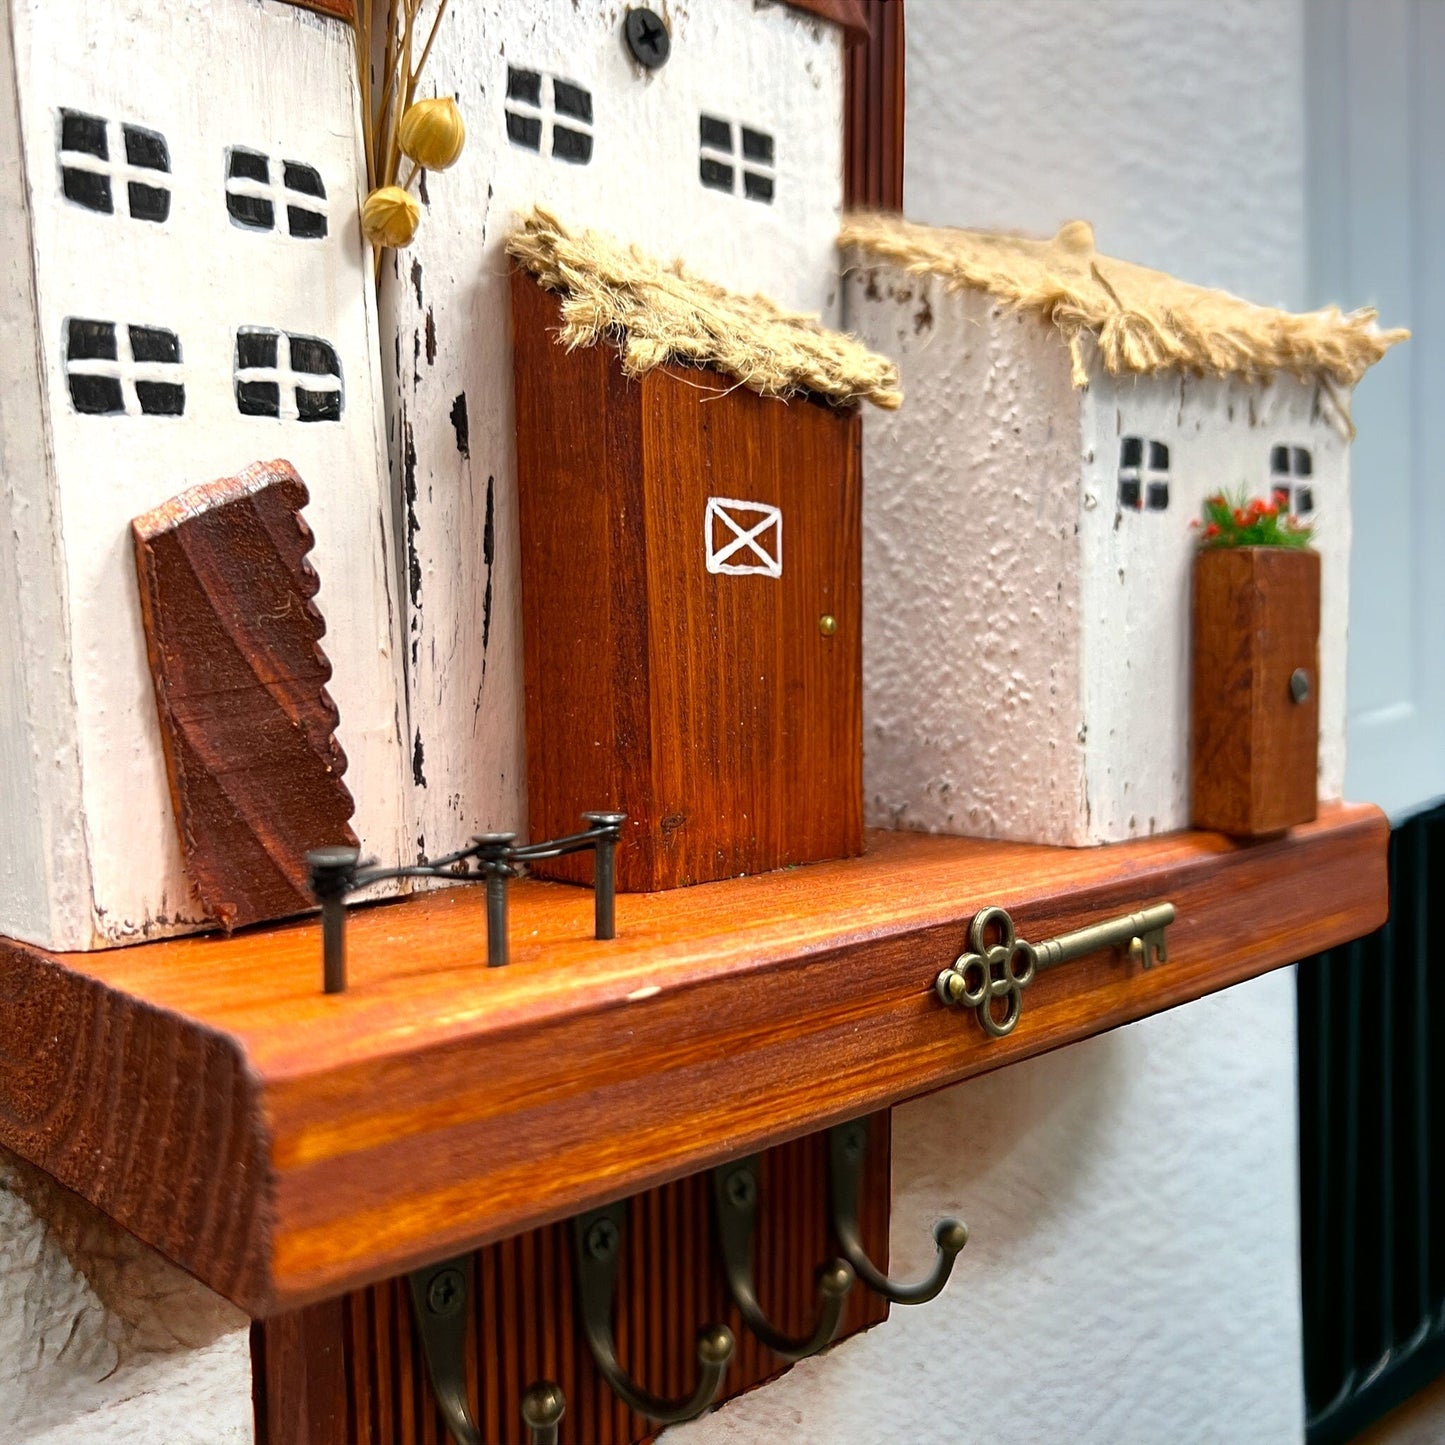 Elodie | Miniaturwelt Schlüsselhalter Home Decor HandmadeByGitty oesterreich handgemachte geschenke in wien